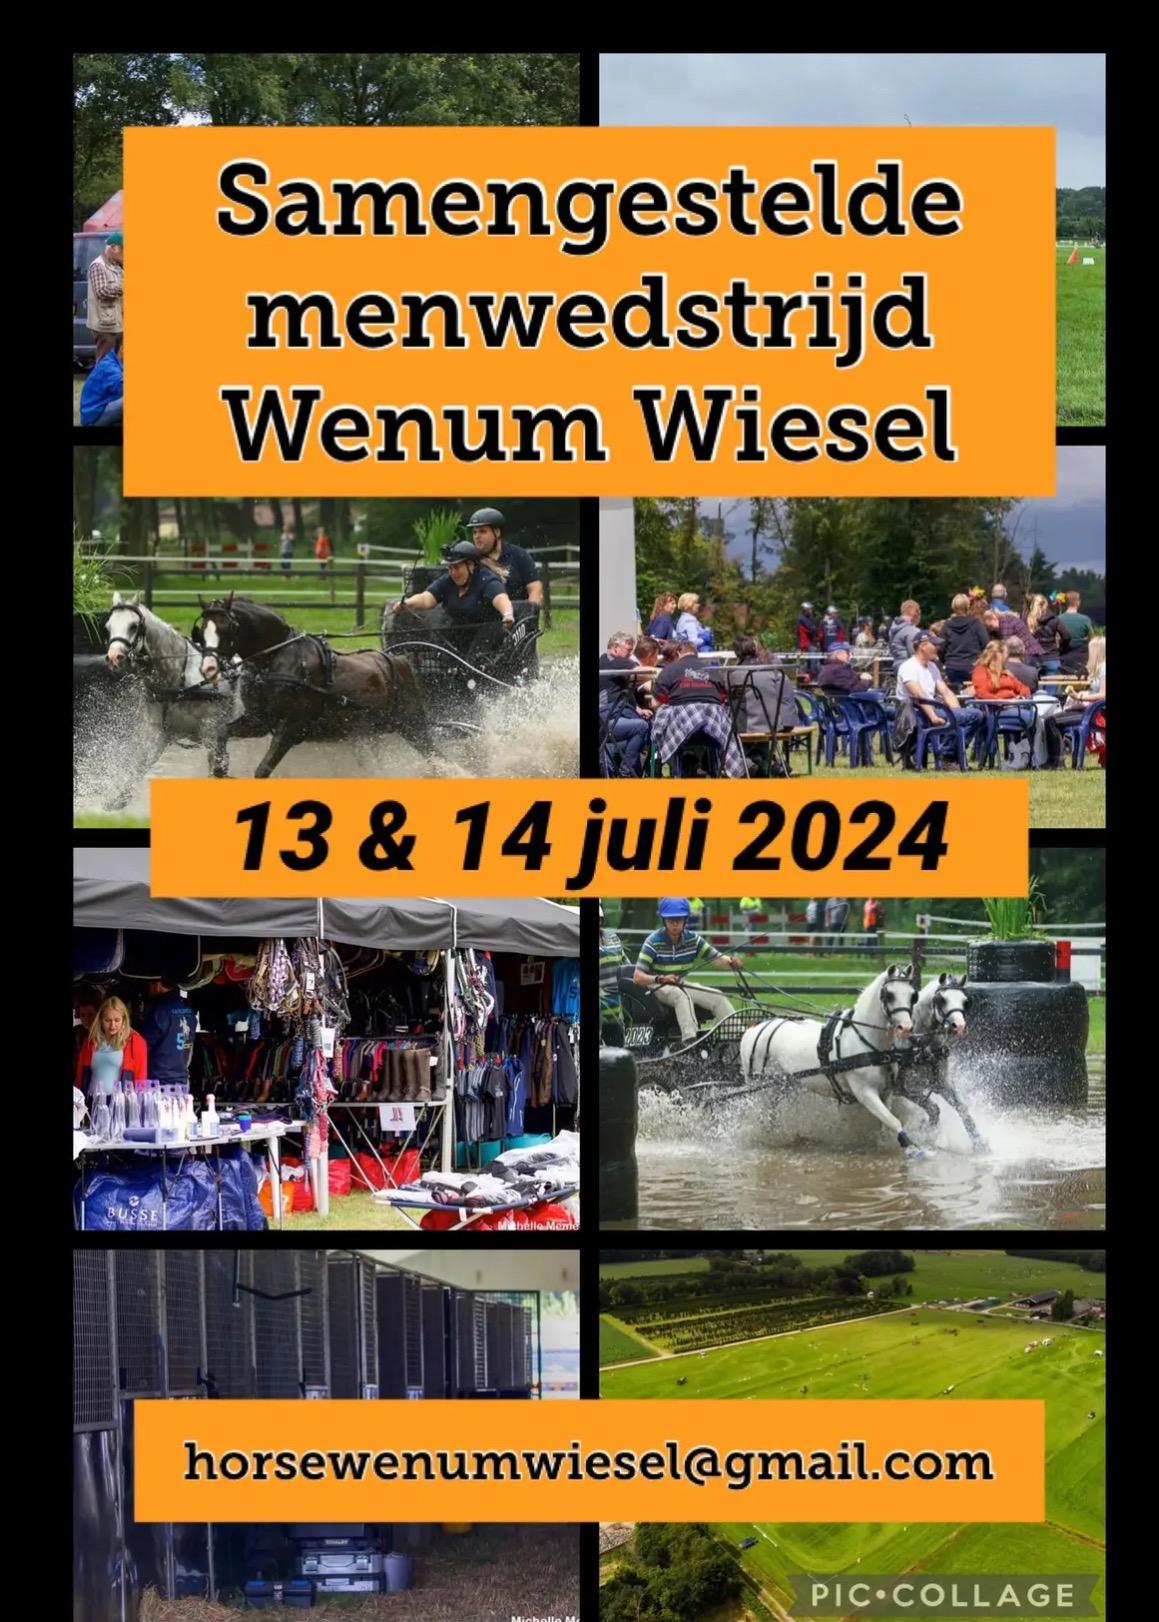 Samengestelde Menwedstrijd Wenum Wiesel 2024